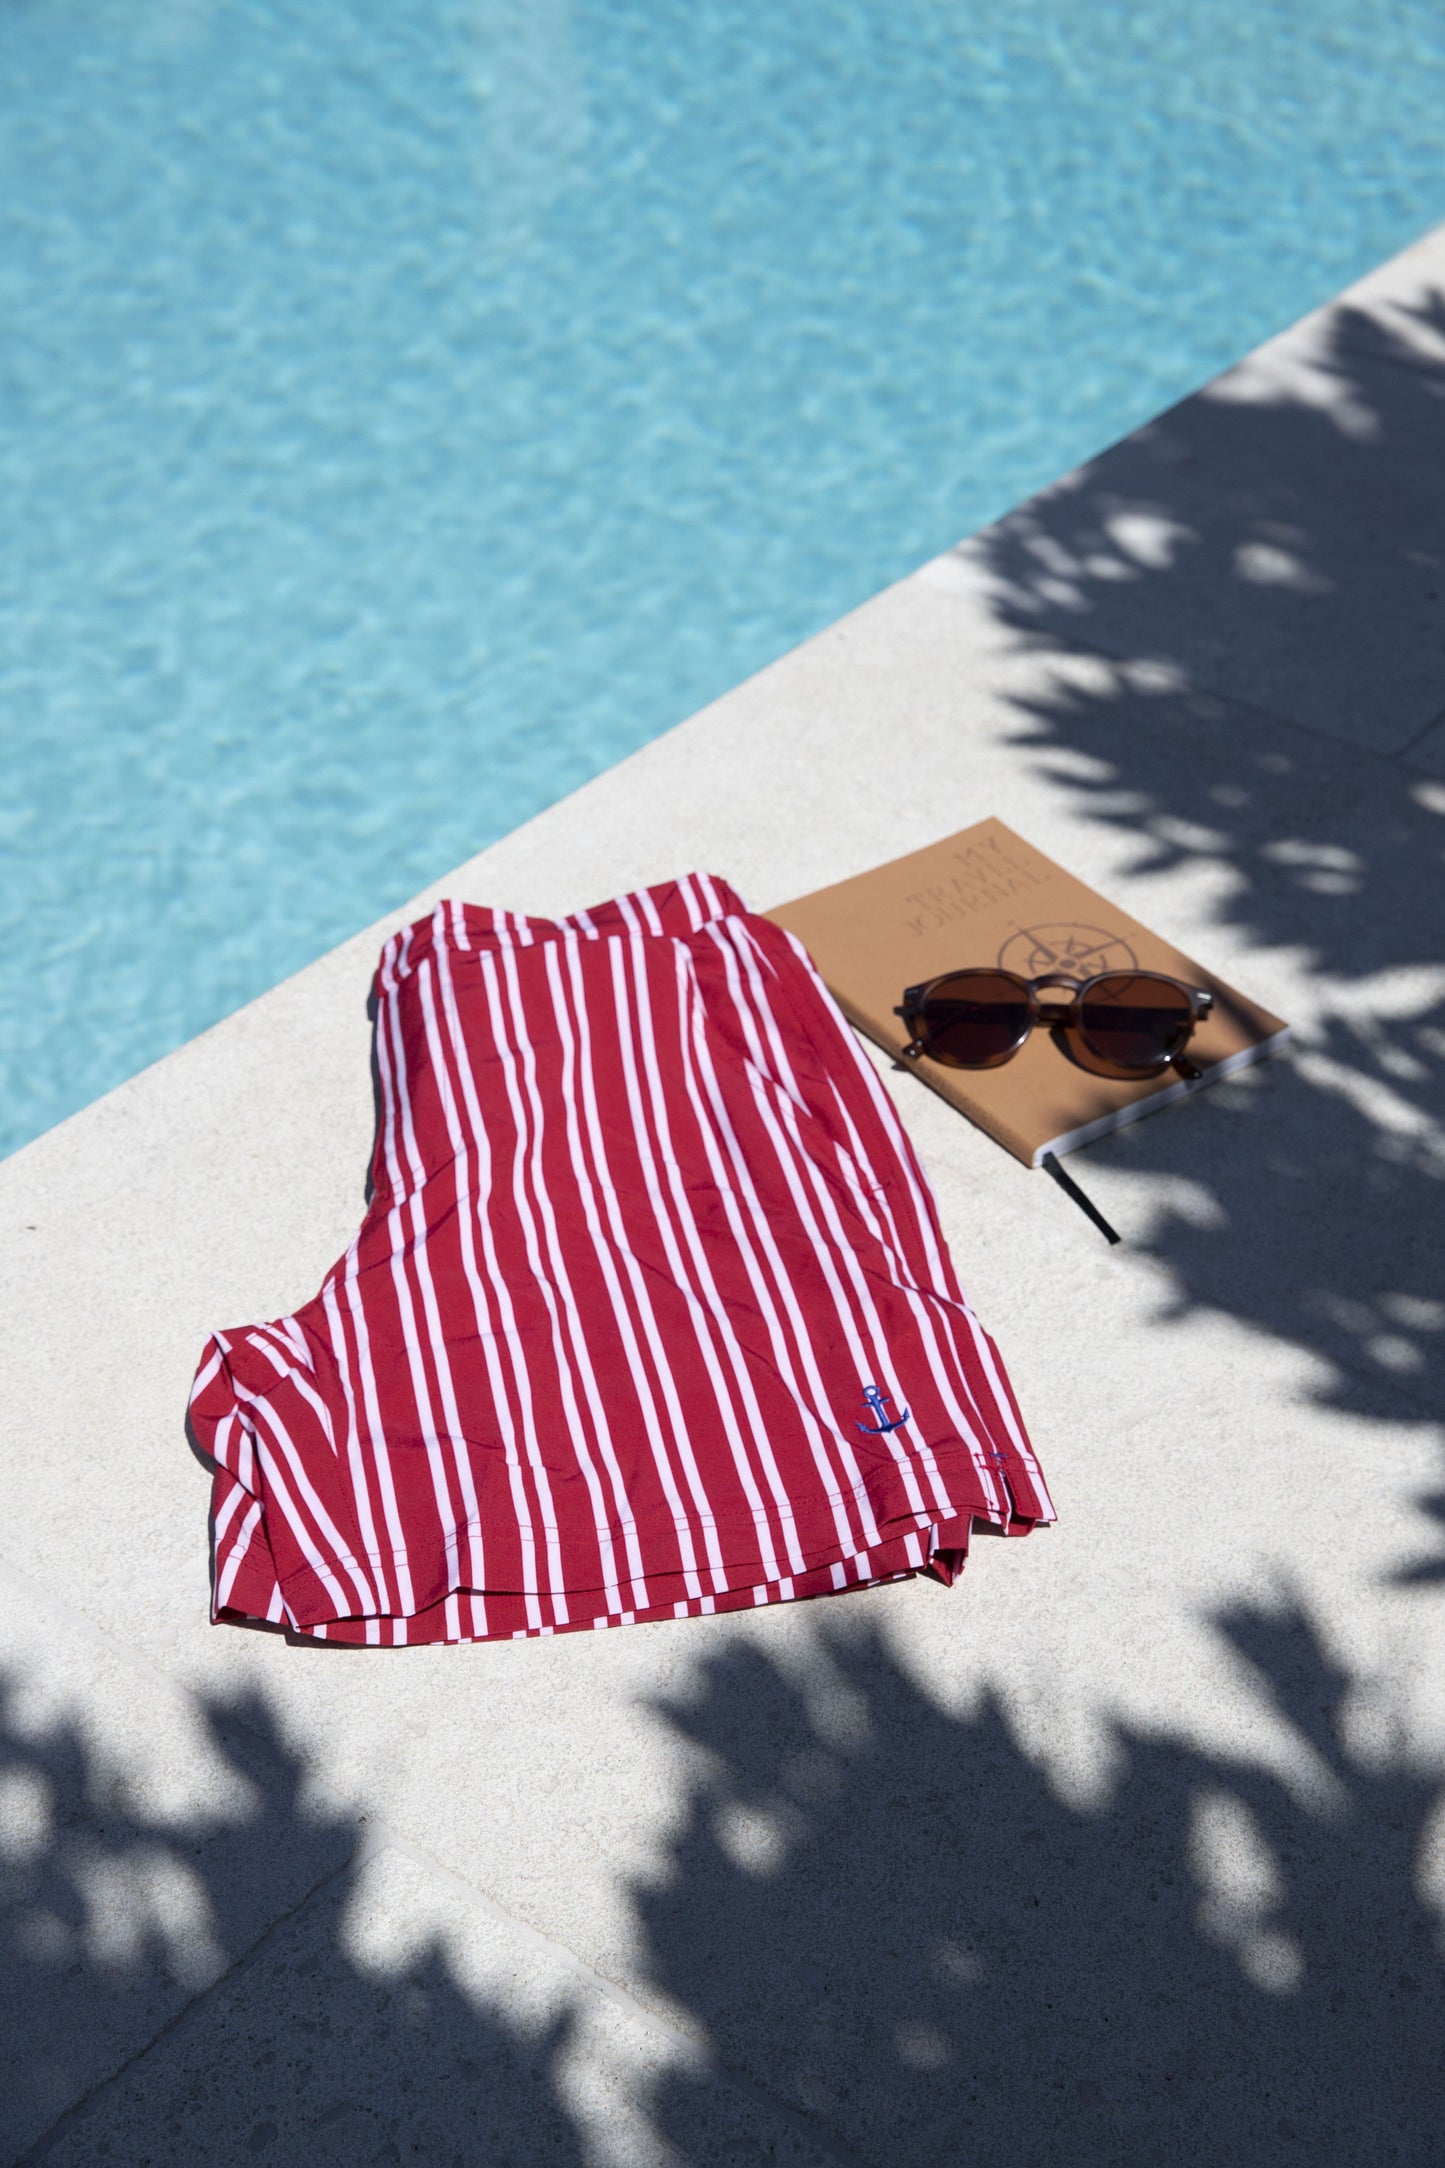 Men's Swim Shorts - Red & White Striped